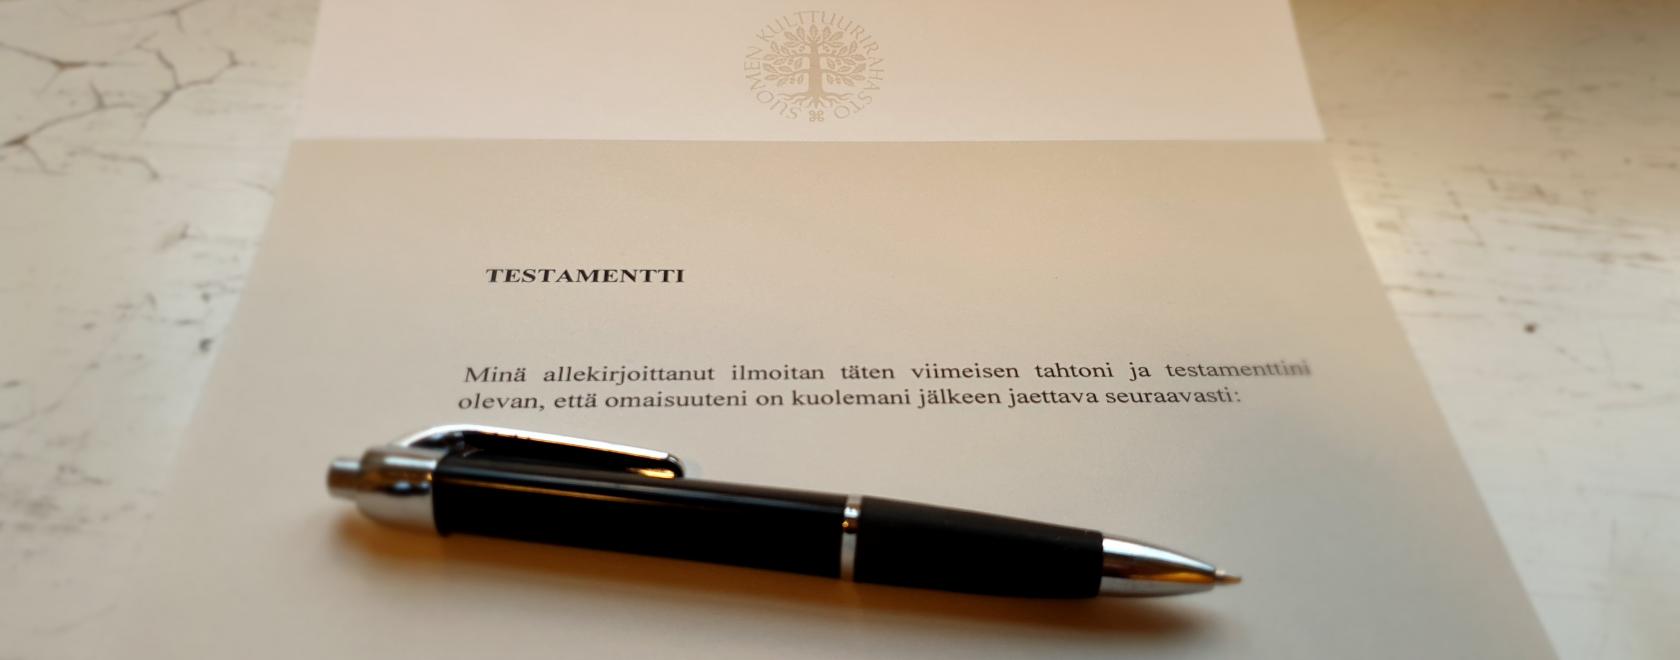 Suomen Kulttuurirahaston omaisuus perustuu vapaaehtoisiin lahjoituksiin. Otamme edelleen vastaan testamentteja ja lahjoituksia.